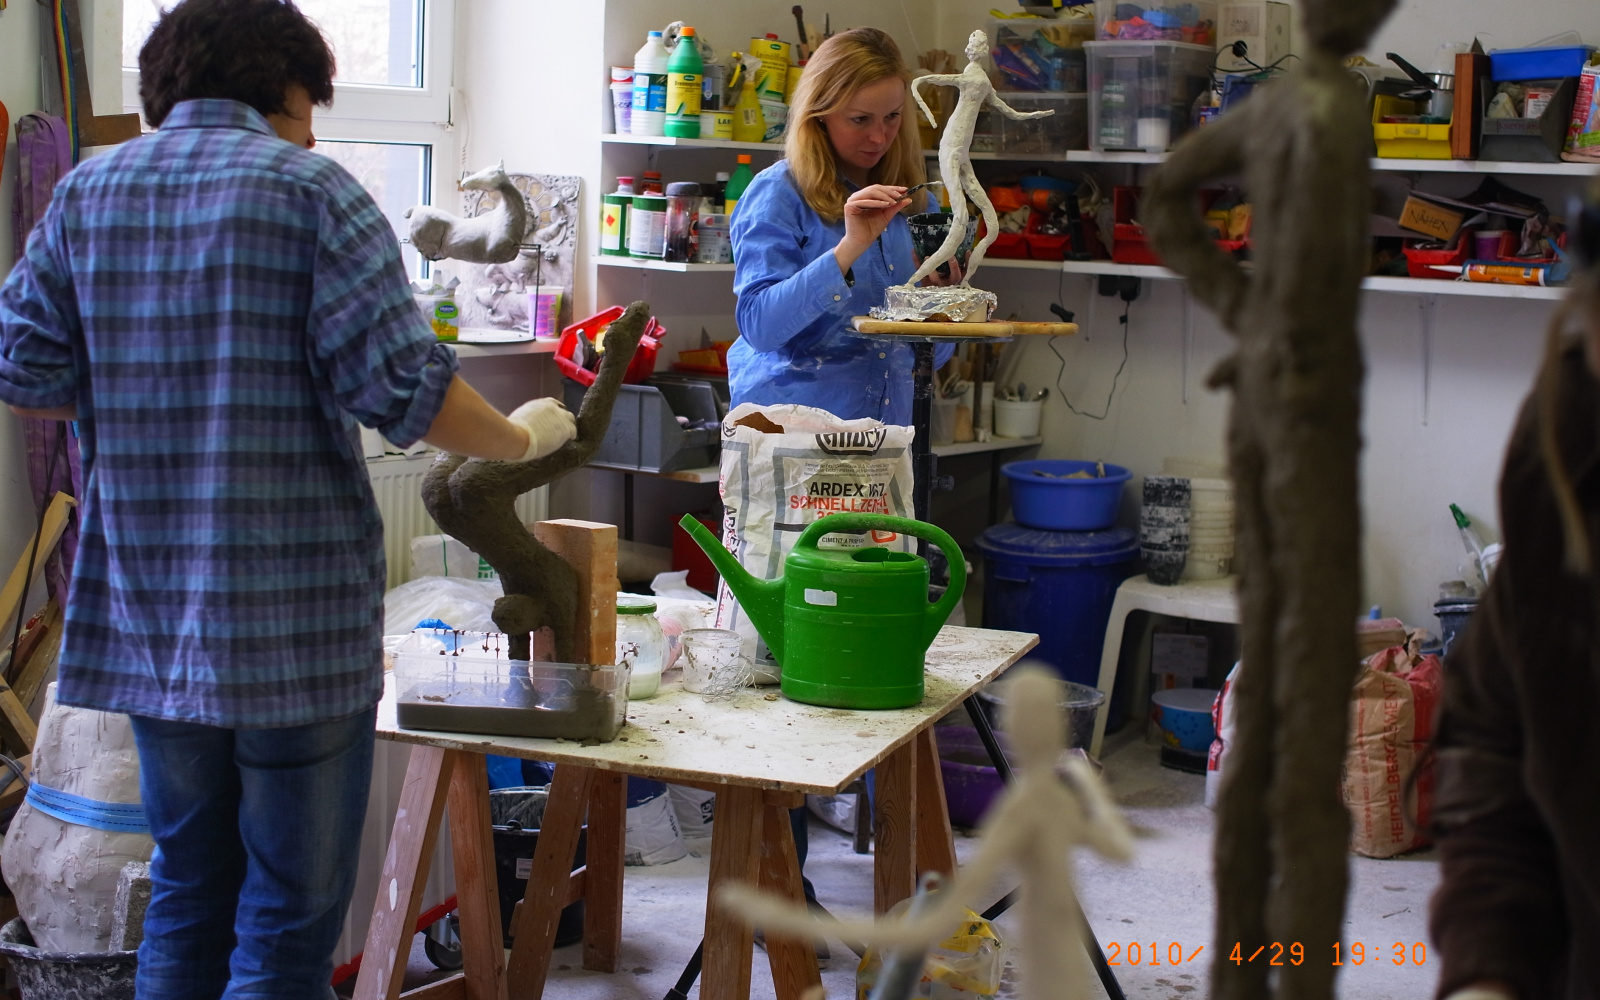 Frauen im Atelier arbeiten an schlanken Figuren aus Gips.